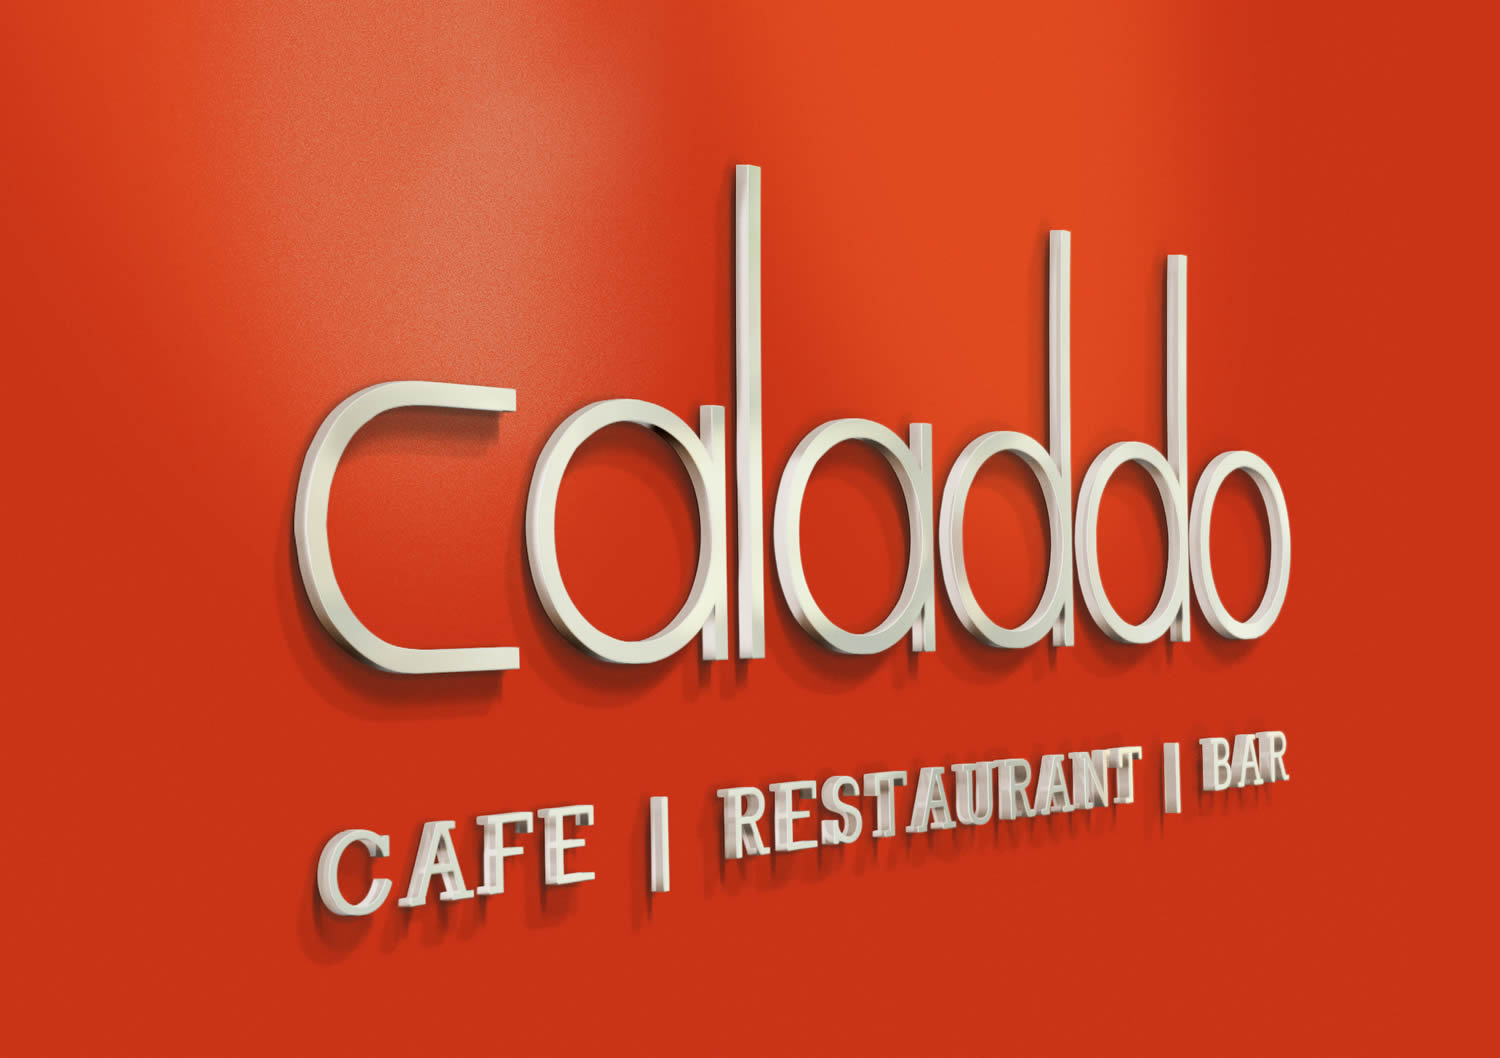 Naming & Branding Design for Caladdo Restaurant